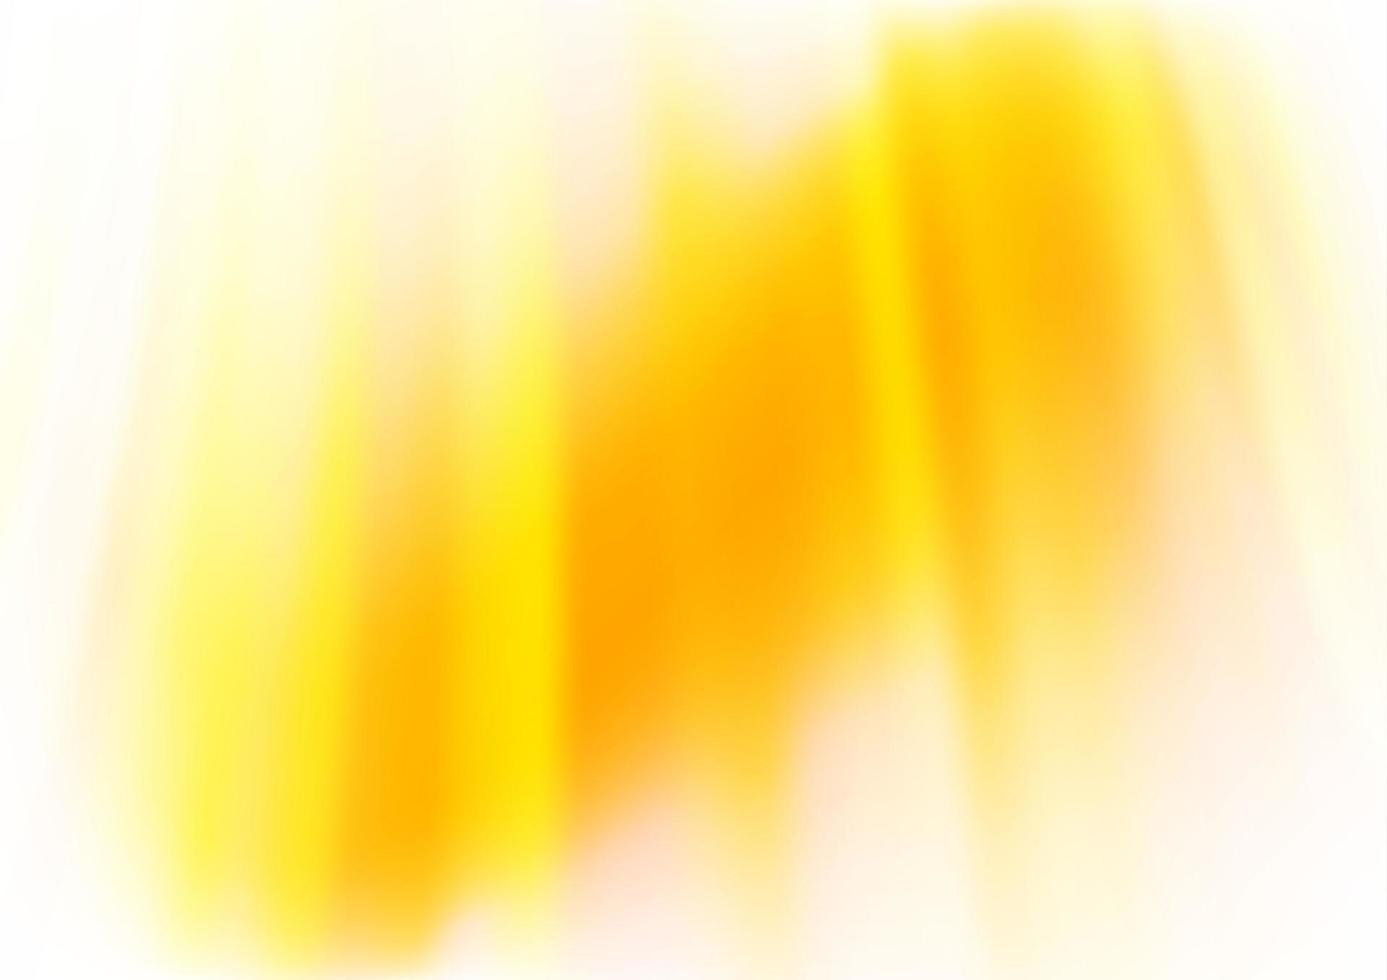 modelo de vetor amarelo e laranja claro com formas de bolha.